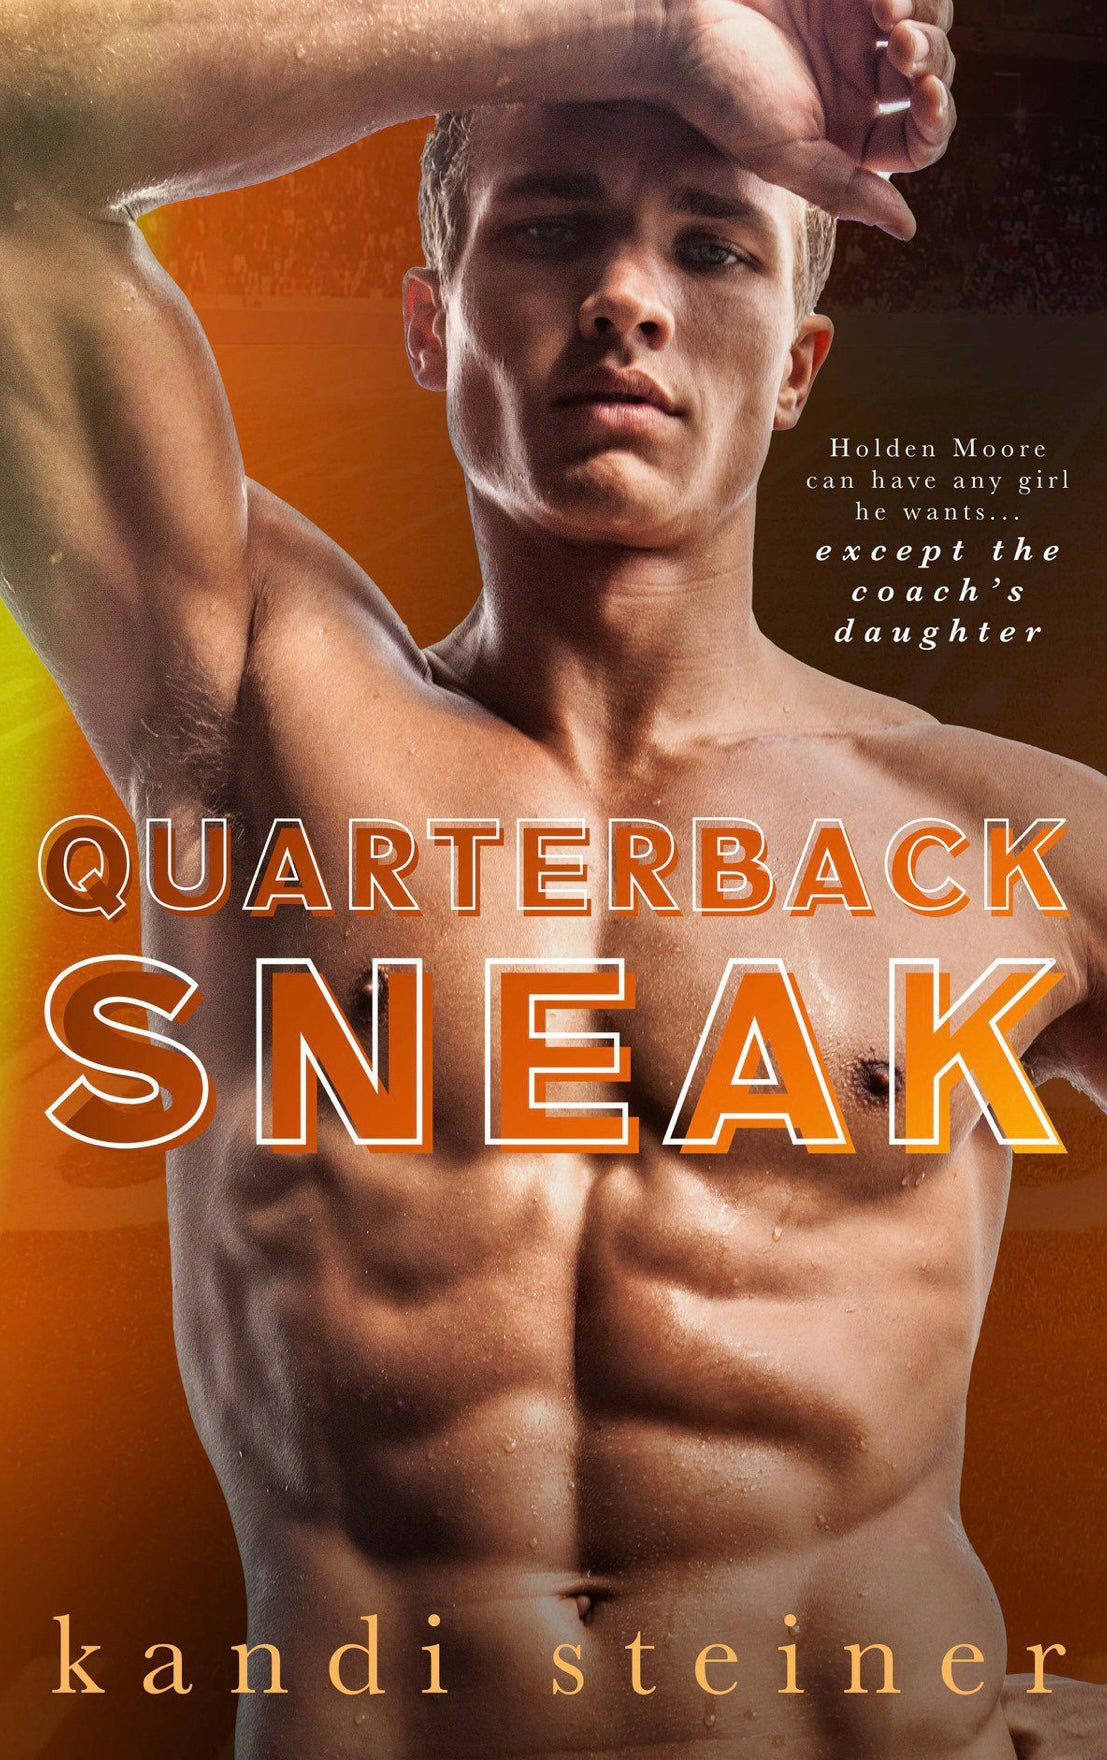 Quarterback Sneak by Kandi Steiner